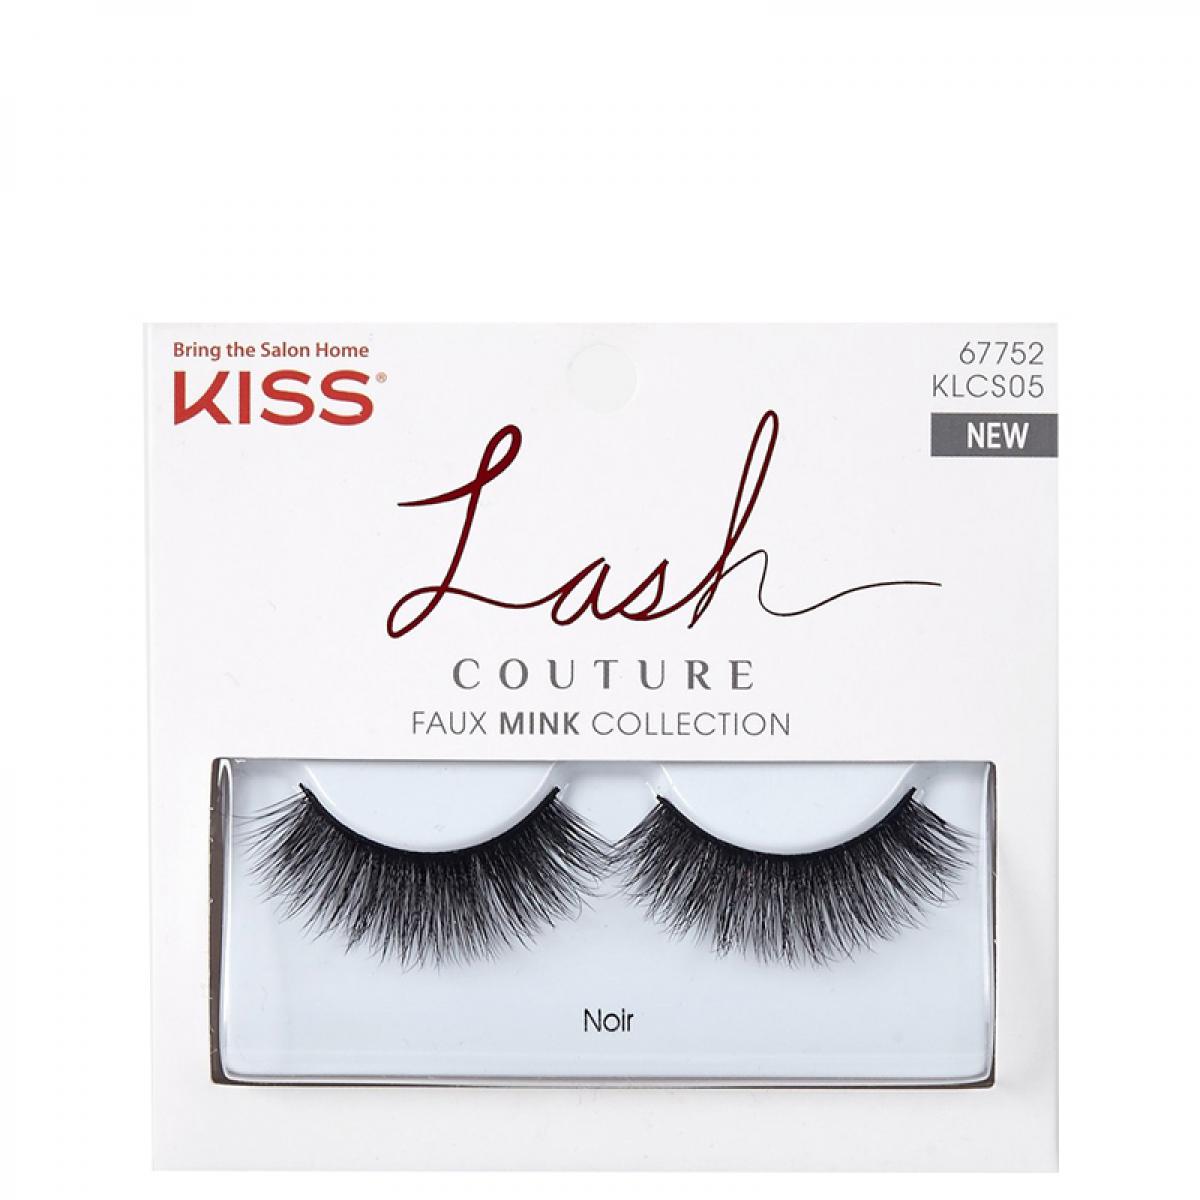 مژه مصنوعی مدل KLCS05 - Kiss Lash Couture Faux Mink Collection KLCS05